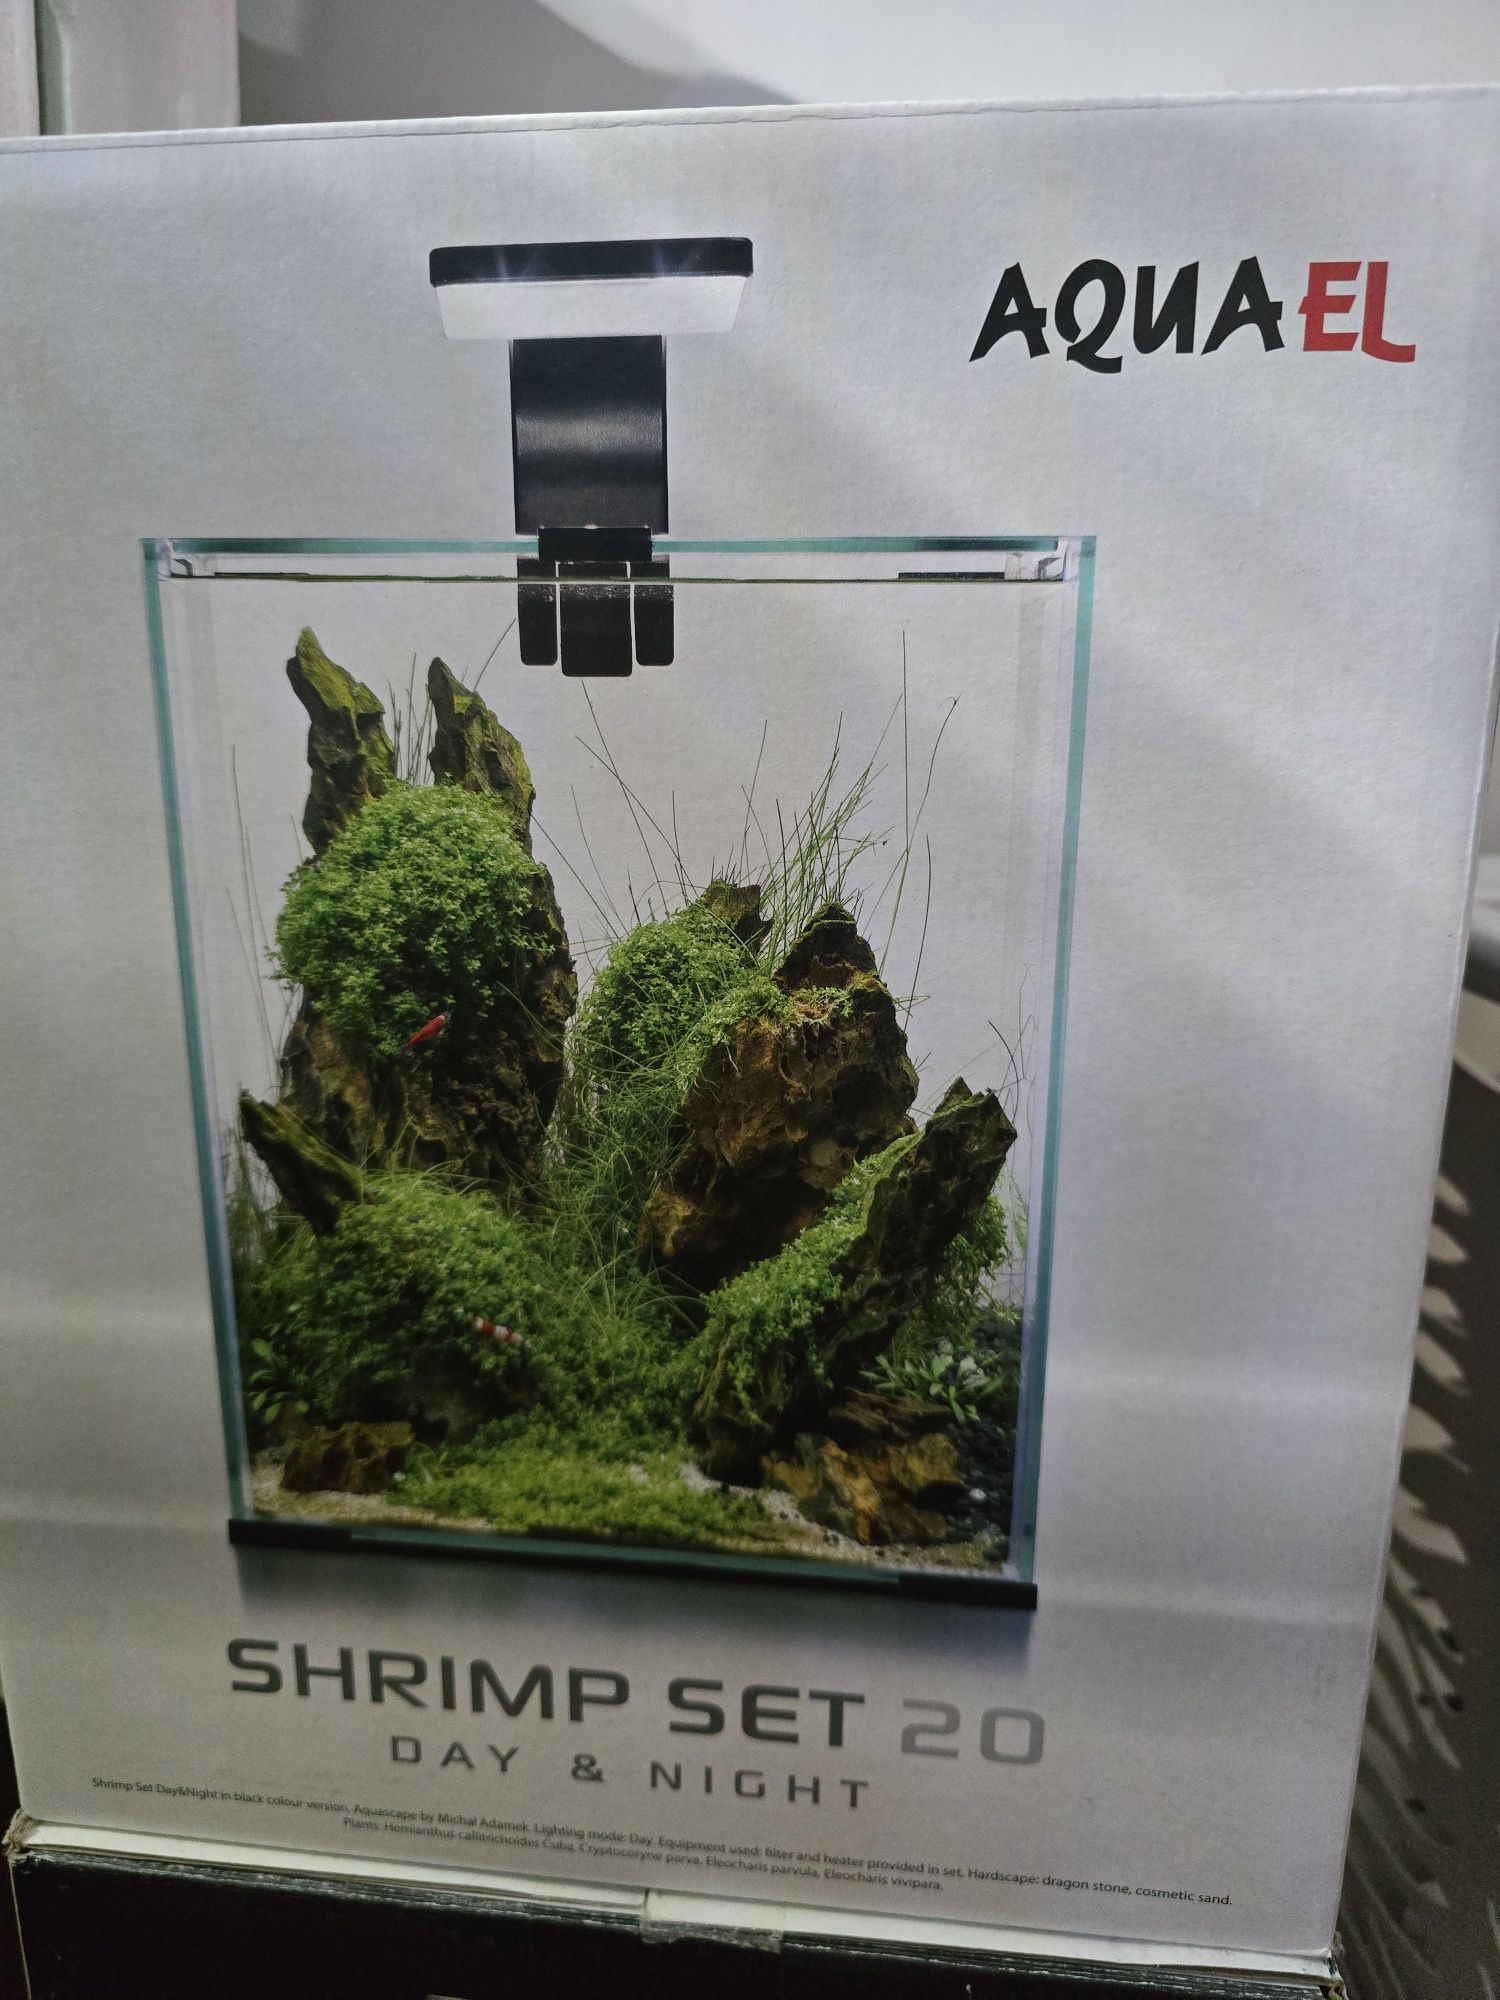 NOWY Shrimp SET DAY & NIGHT 20 BIAŁY Aquael - cena ostateczna